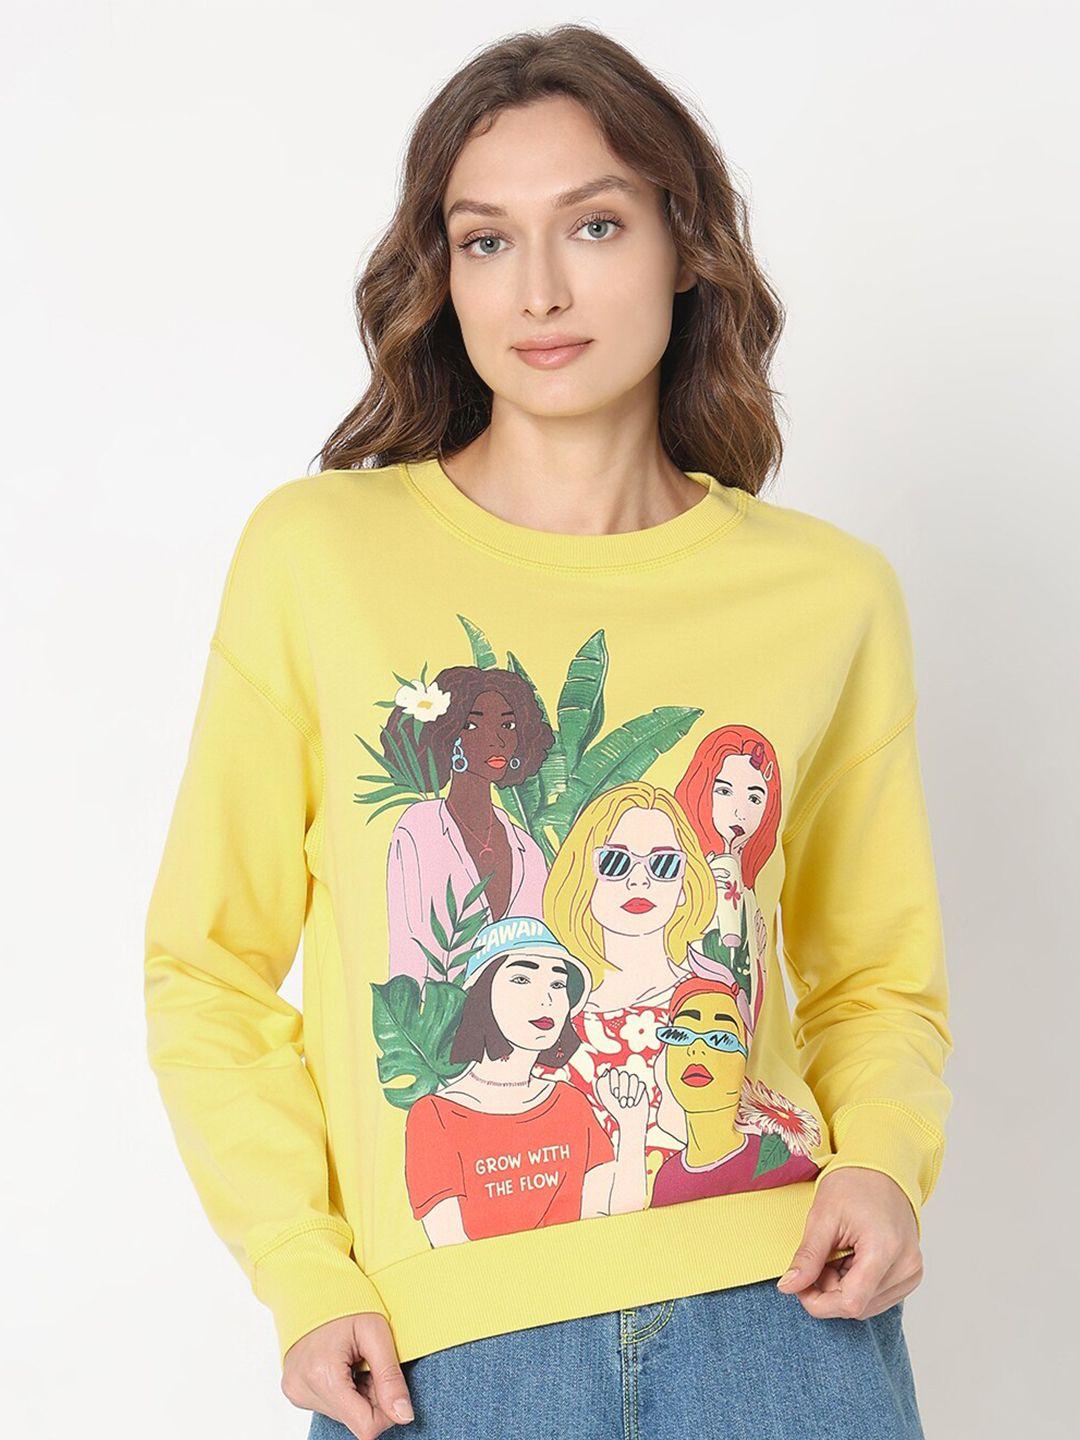 vero moda graphic printed pure cotton pullover sweatshirt